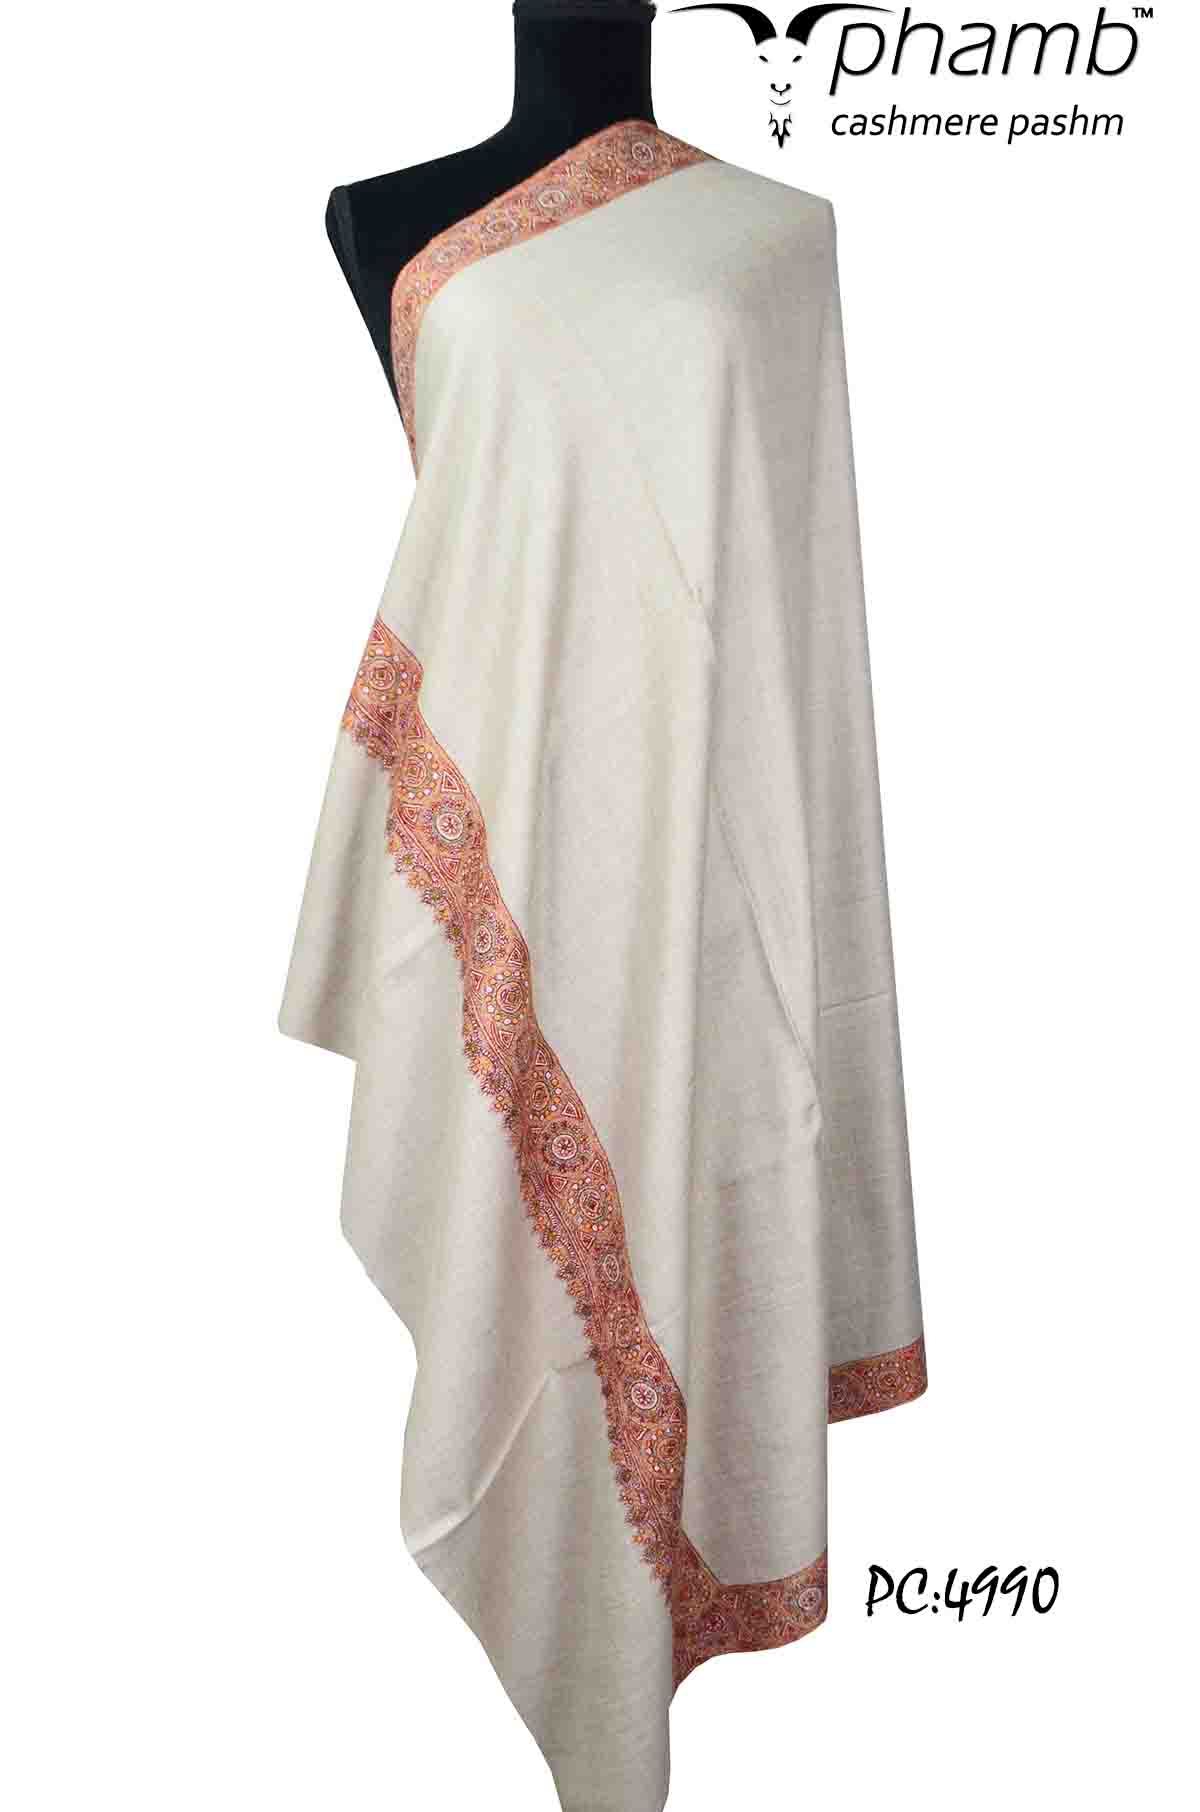 natural sozni shawl - 4990